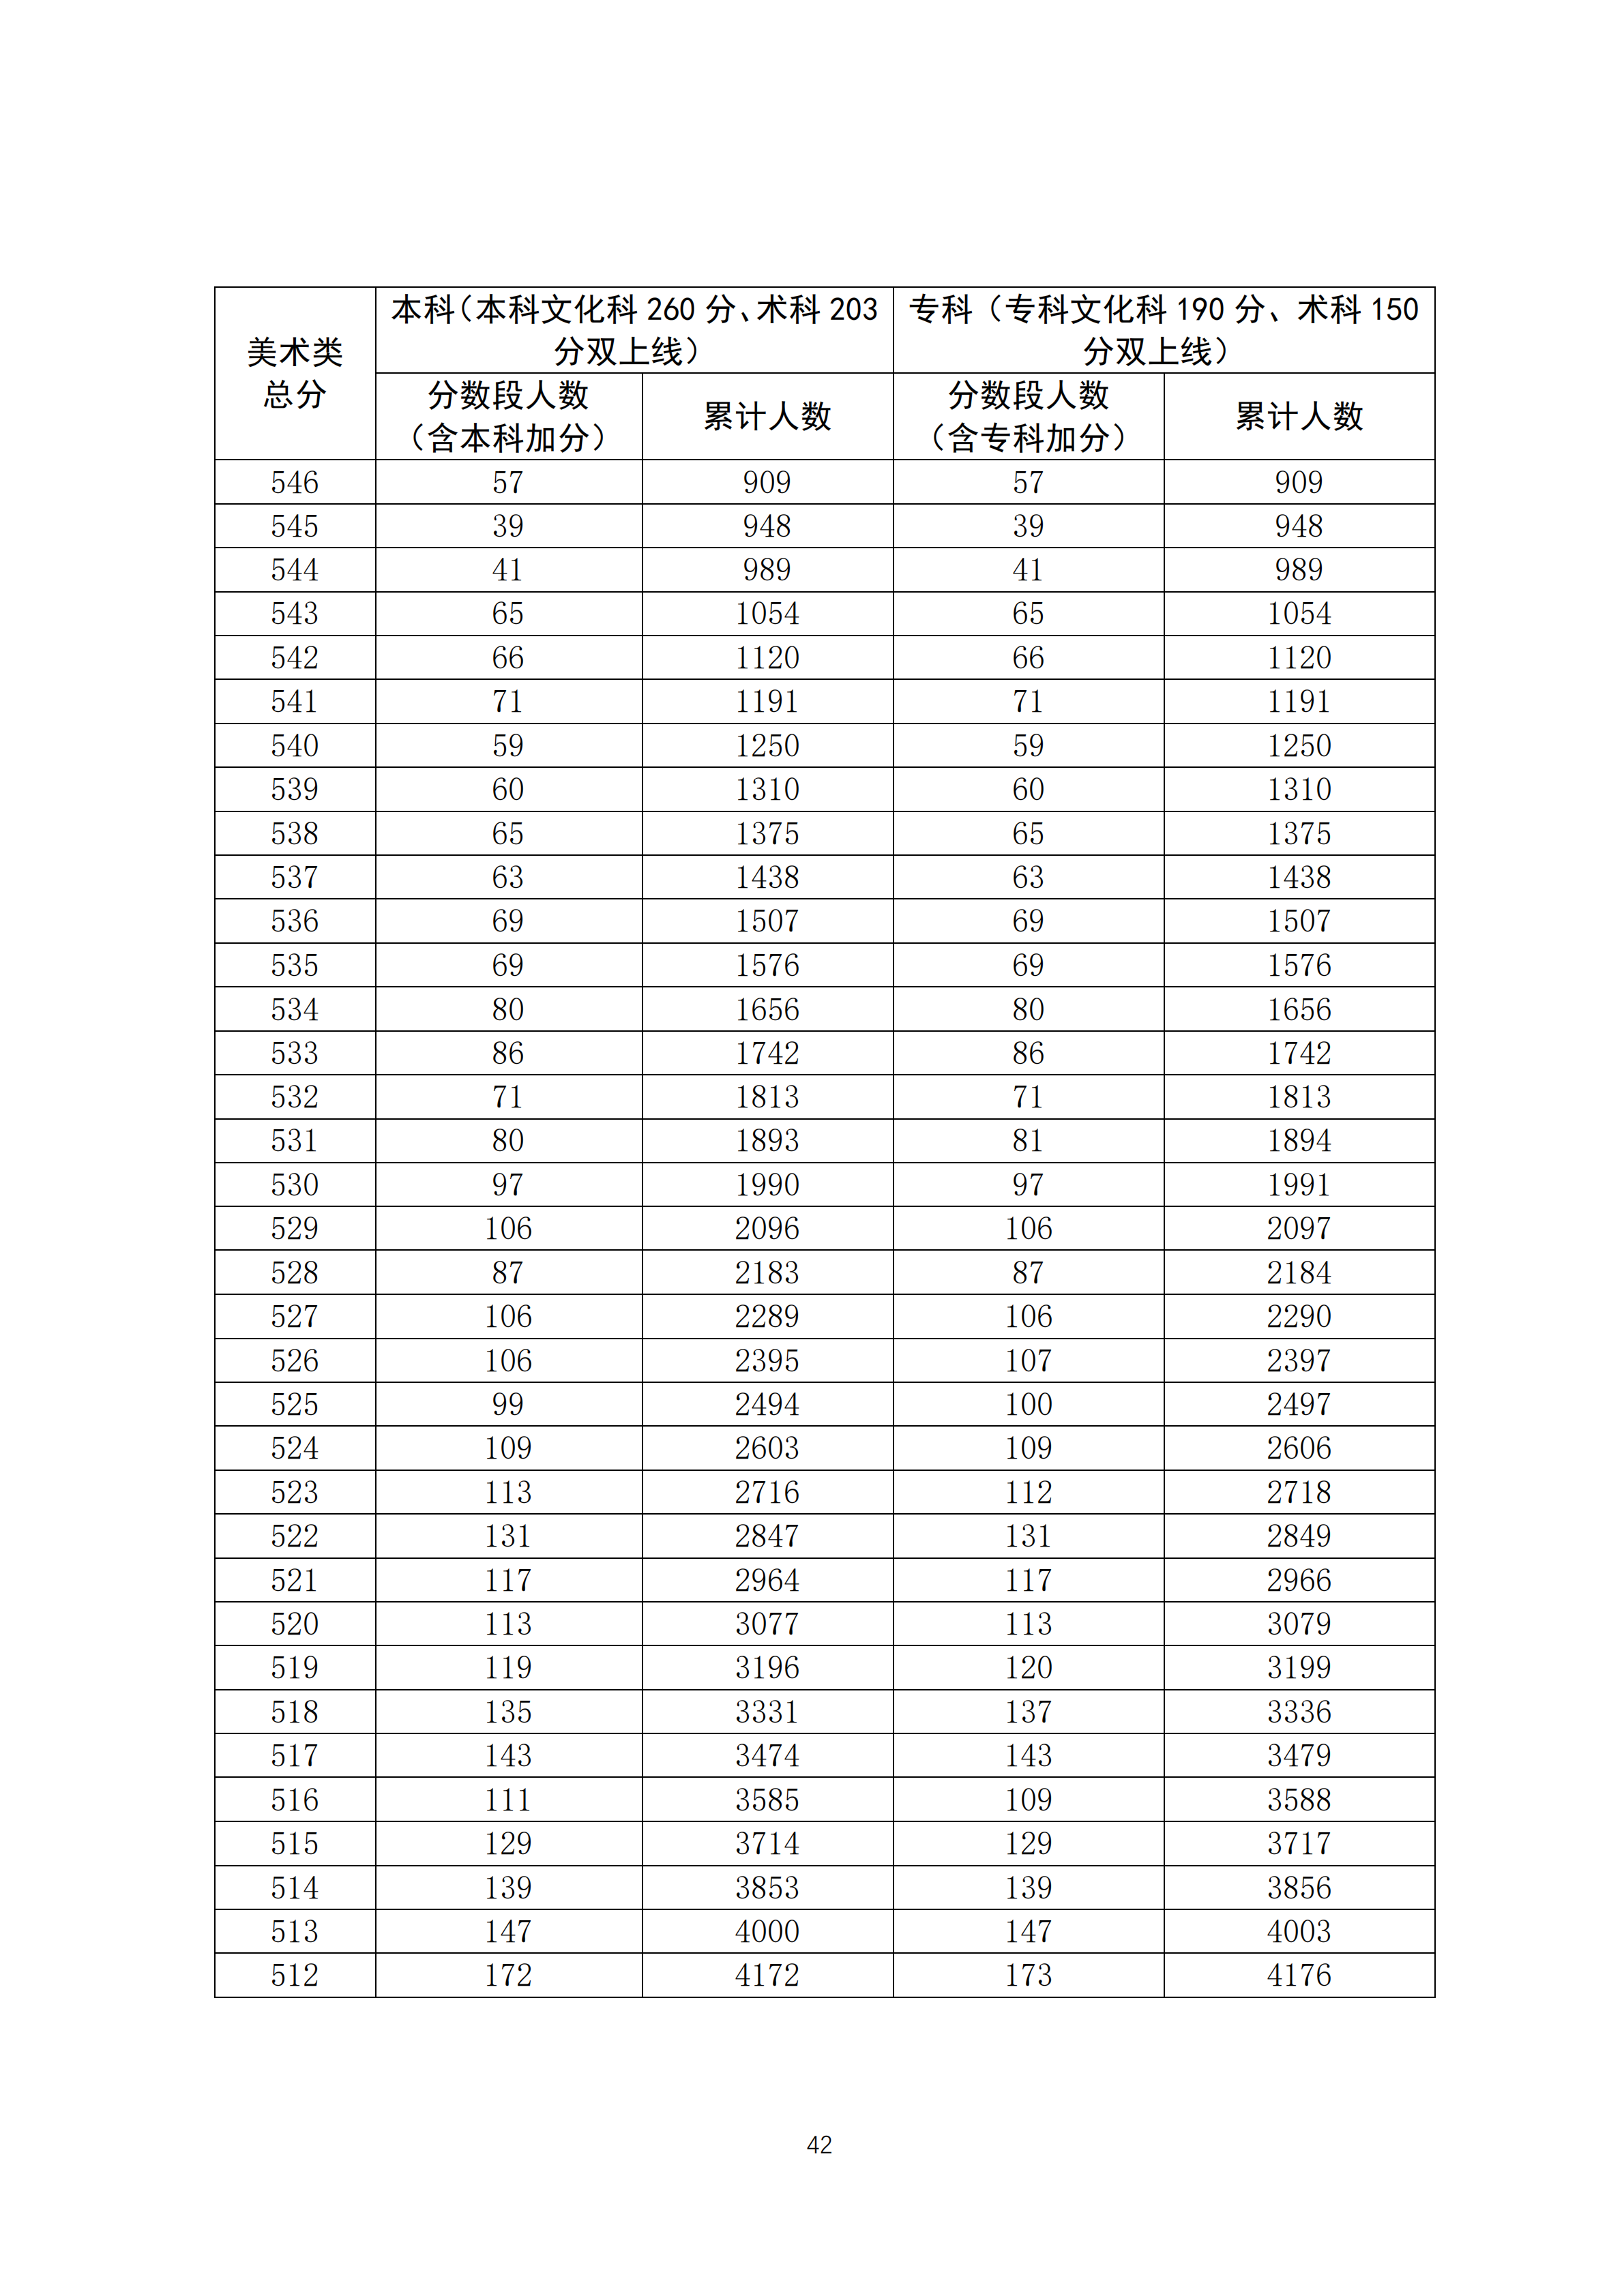 2020广东高考一分一段表 美术类成绩排名